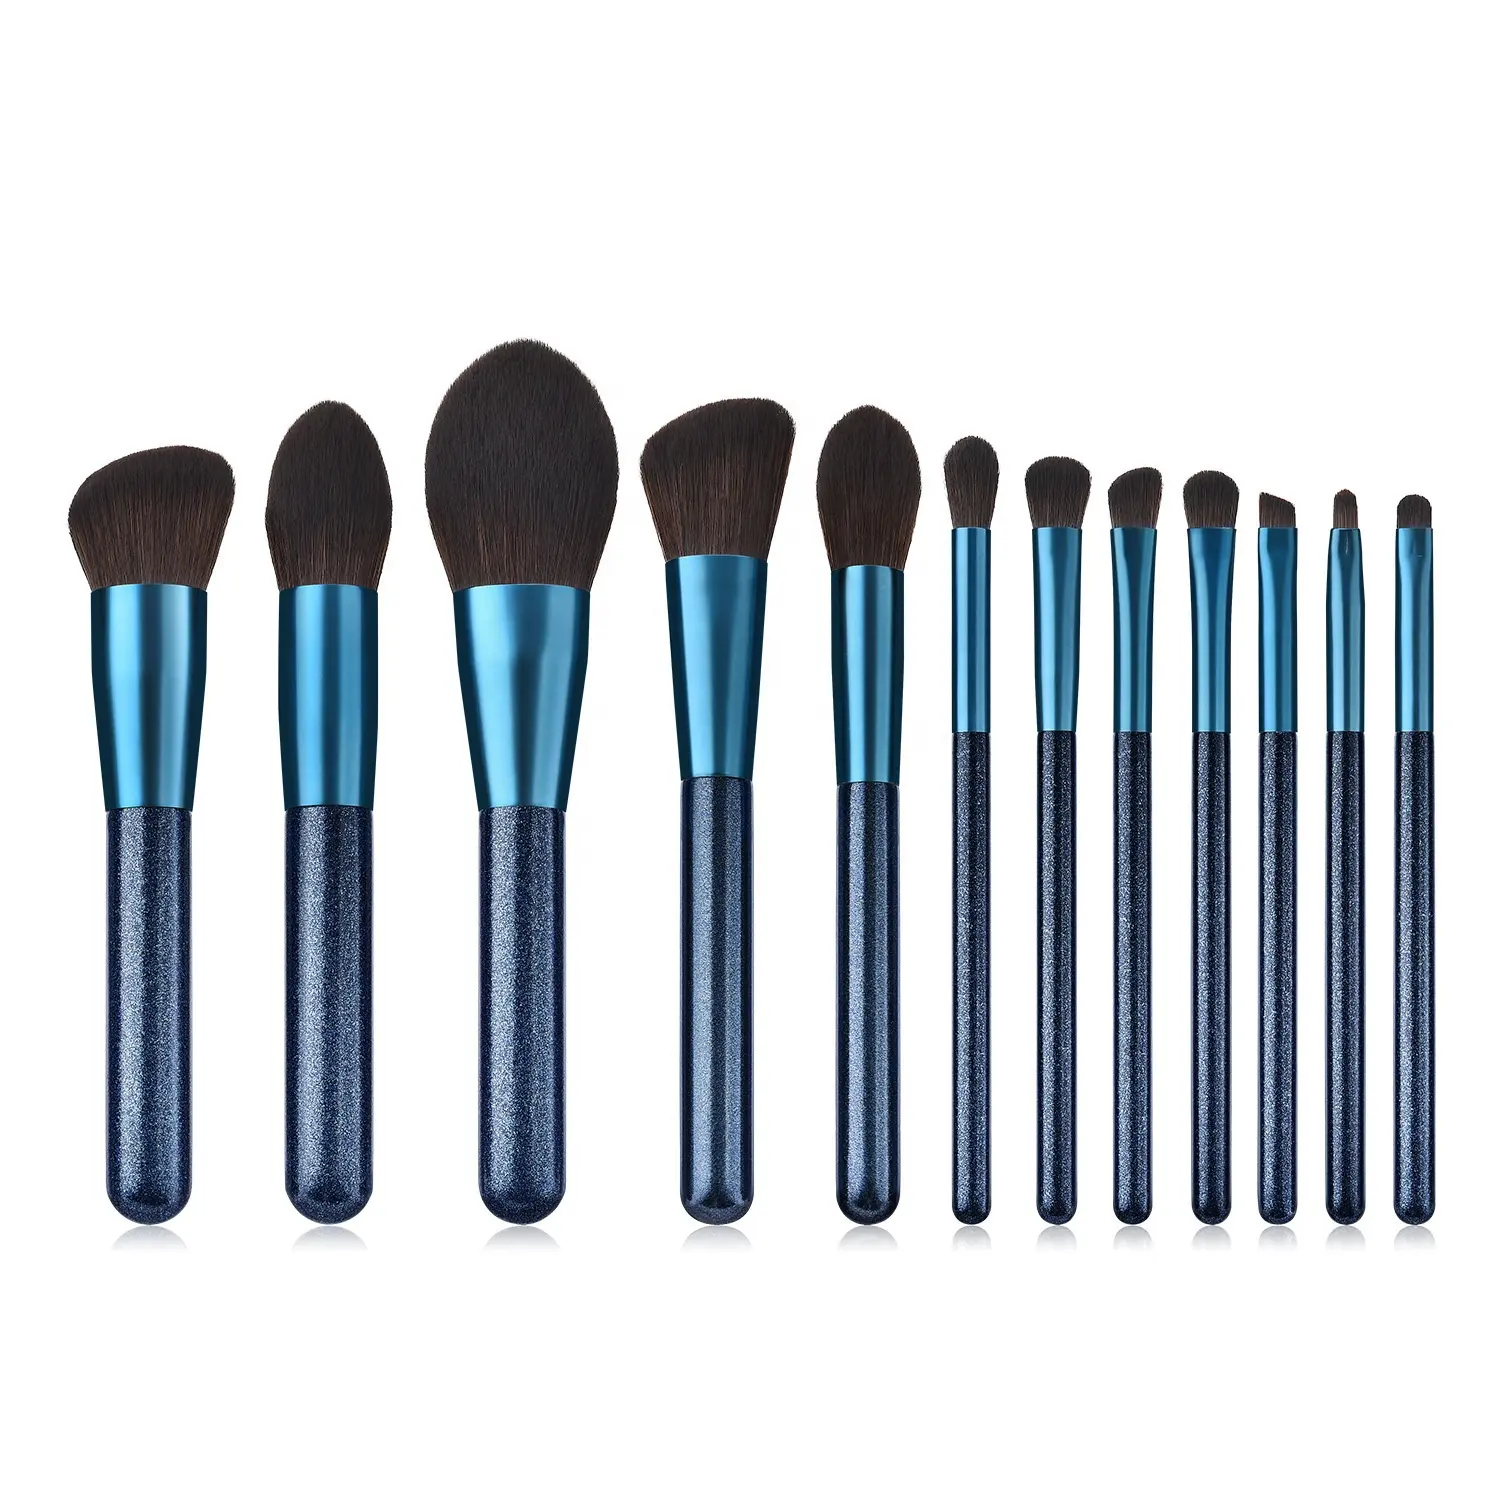 Toptan 12 adet mavi profesyonel kolu makyaj fırçası takım yüksek kalite lüks makyaj göz farı pudra fondöten fırçaları